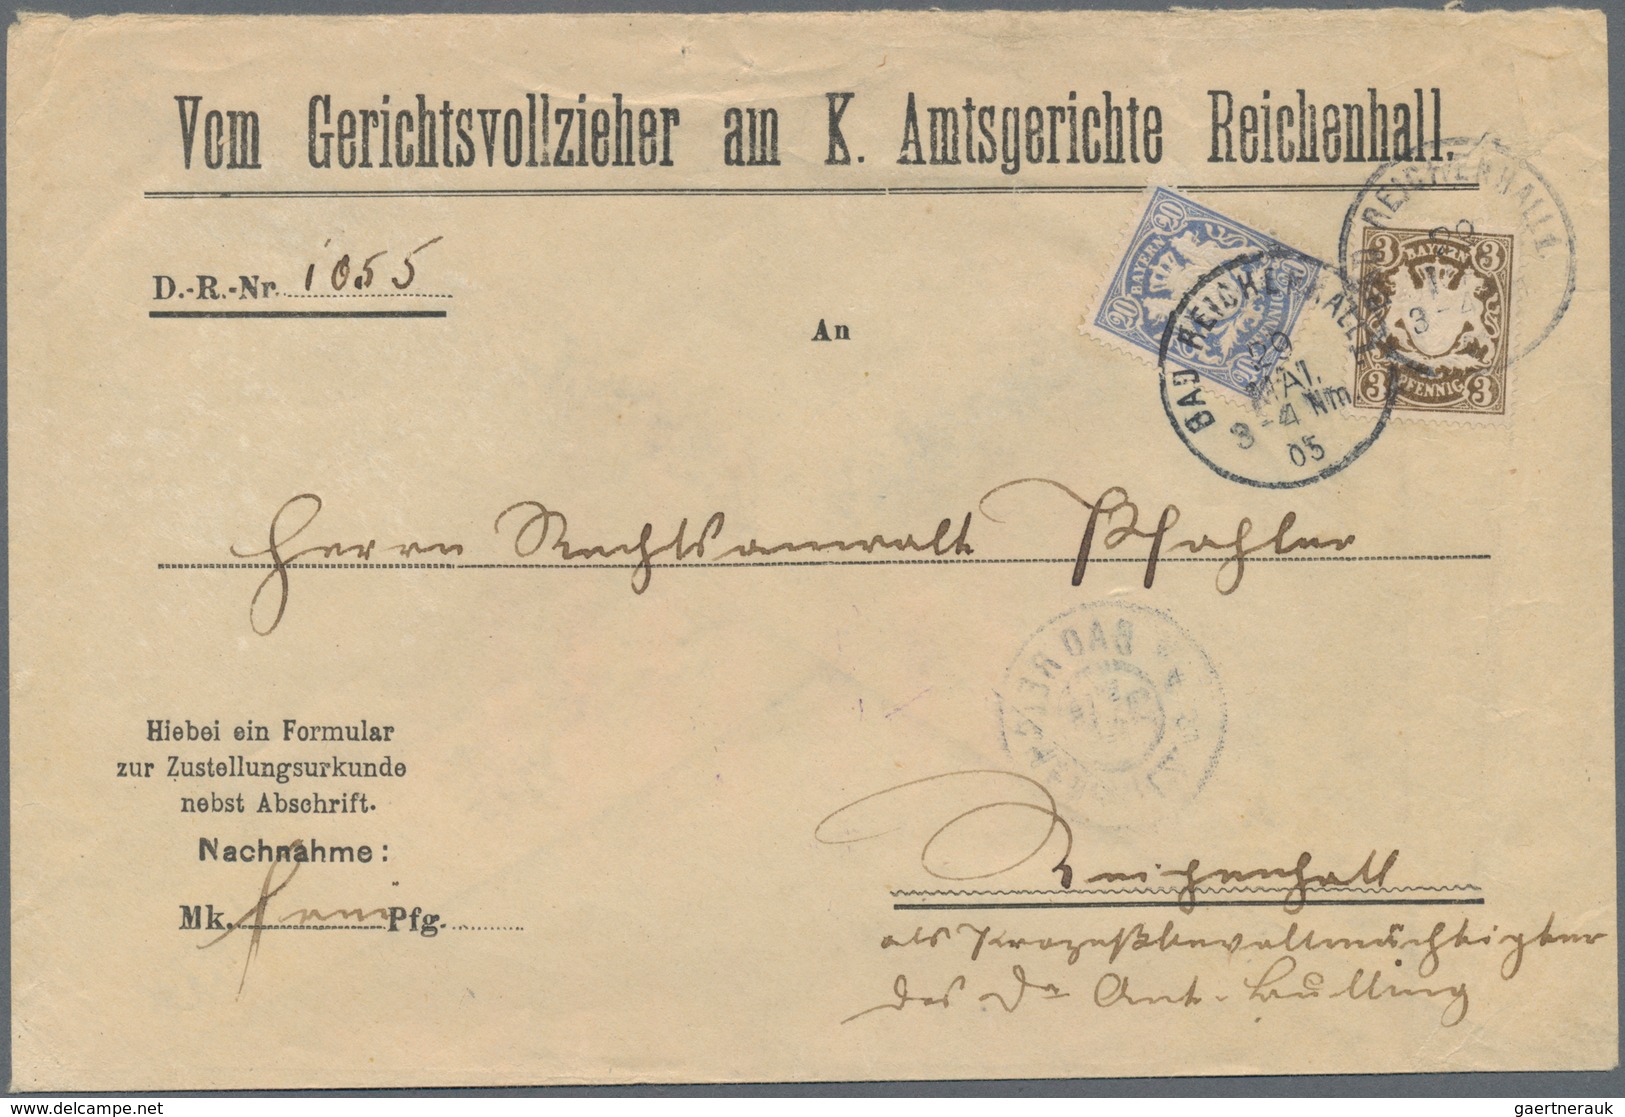 Bayern - Marken und Briefe: 1852/1920, Konvolut von 37 Belegen mit Verwendungen im ORTSVERKEHR, dabe